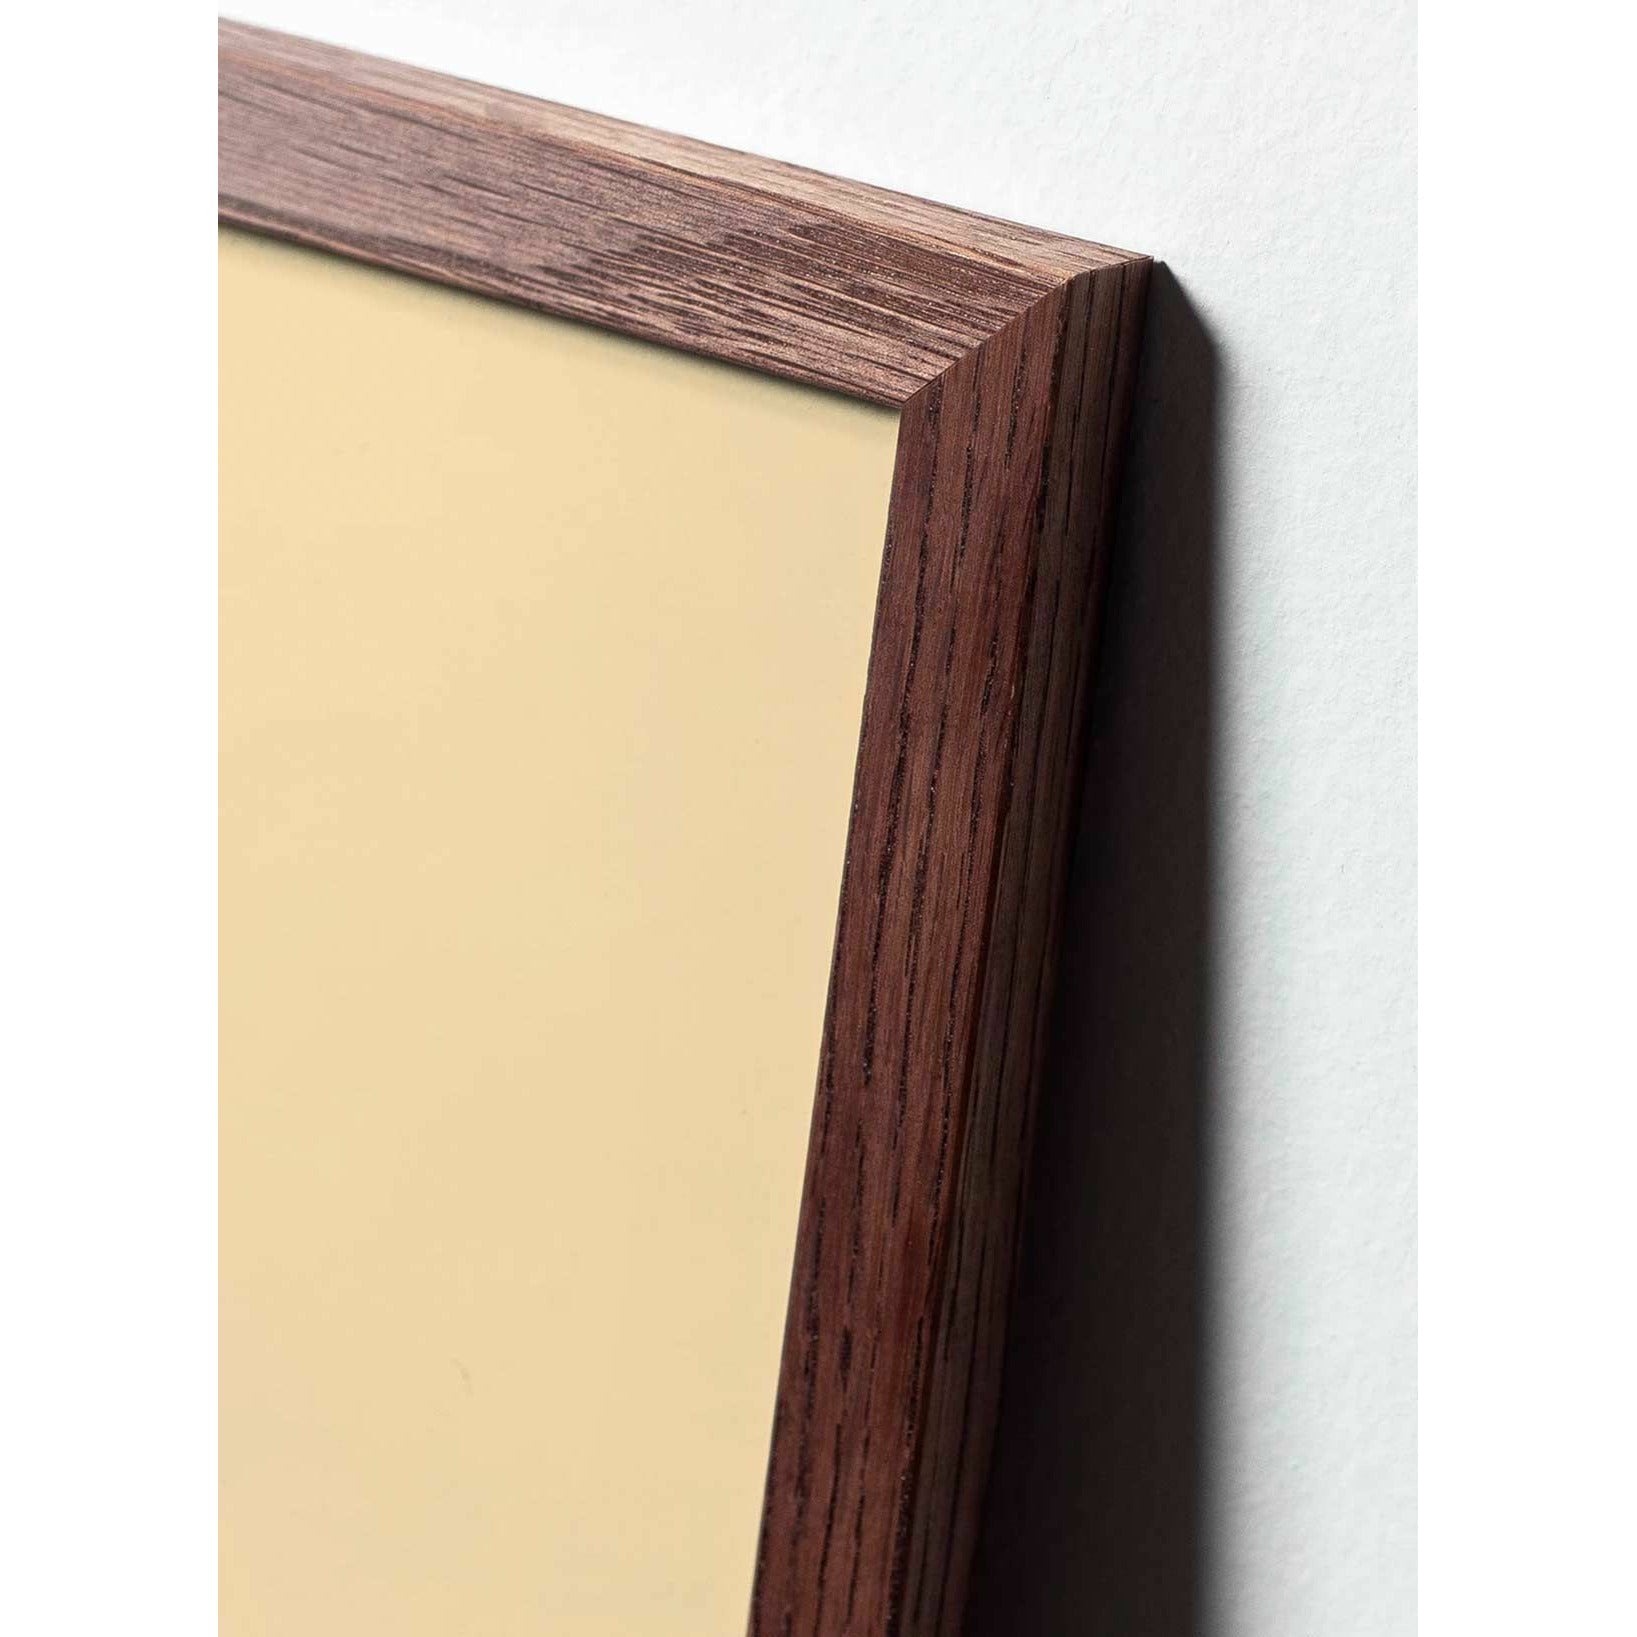 Póster clásico de cono de pino de creación, marco de madera oscura A5, fondo amarillo